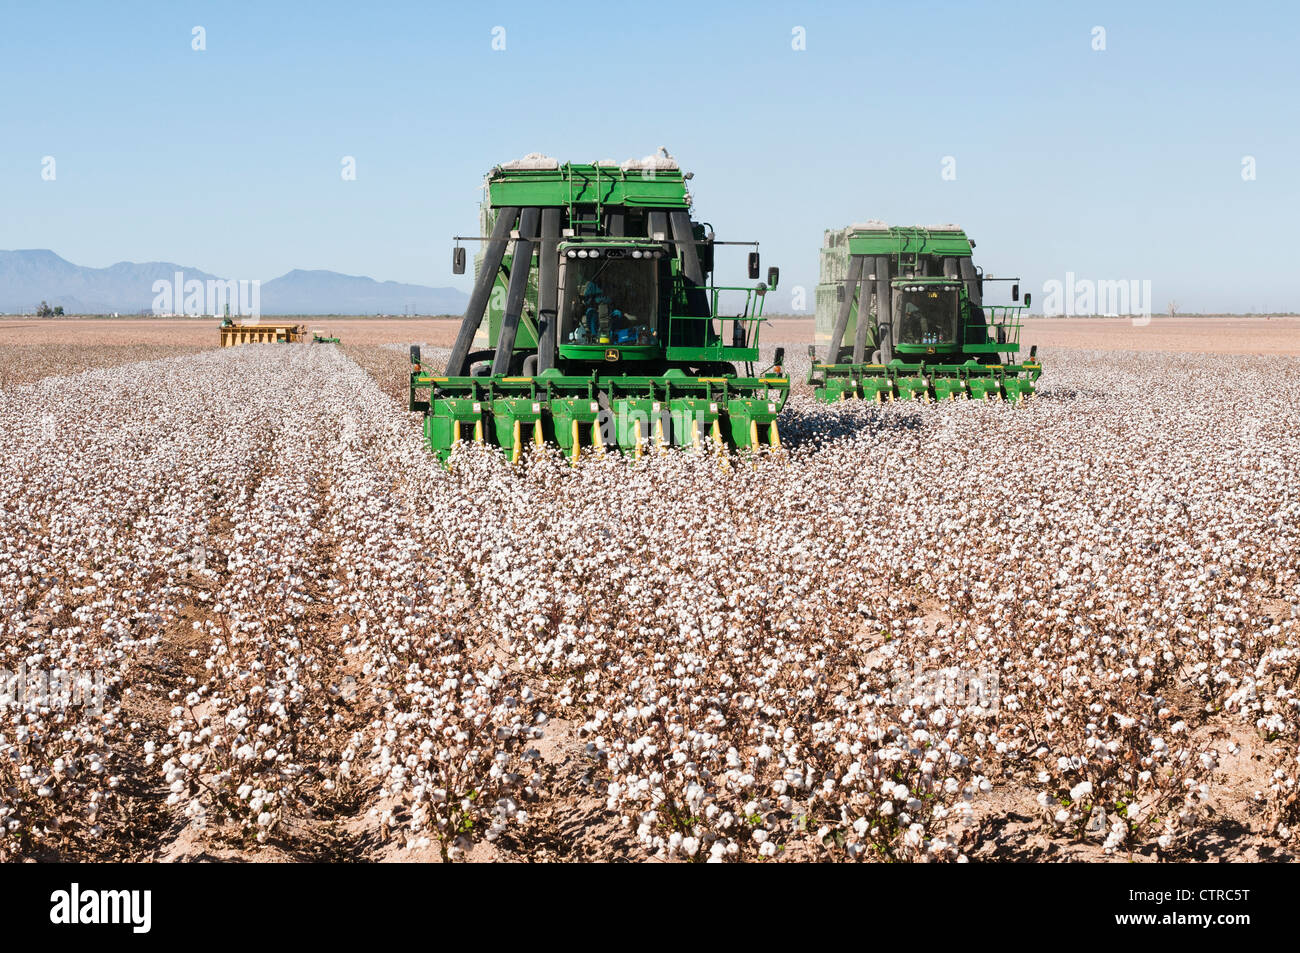 Ein paar Baumwolle pflücken Maschinen Ernten ein Baumwollfeld in Arizona. Eine Modul-Verpackungsmaschine wird im Hintergrund angezeigt. Stockfoto